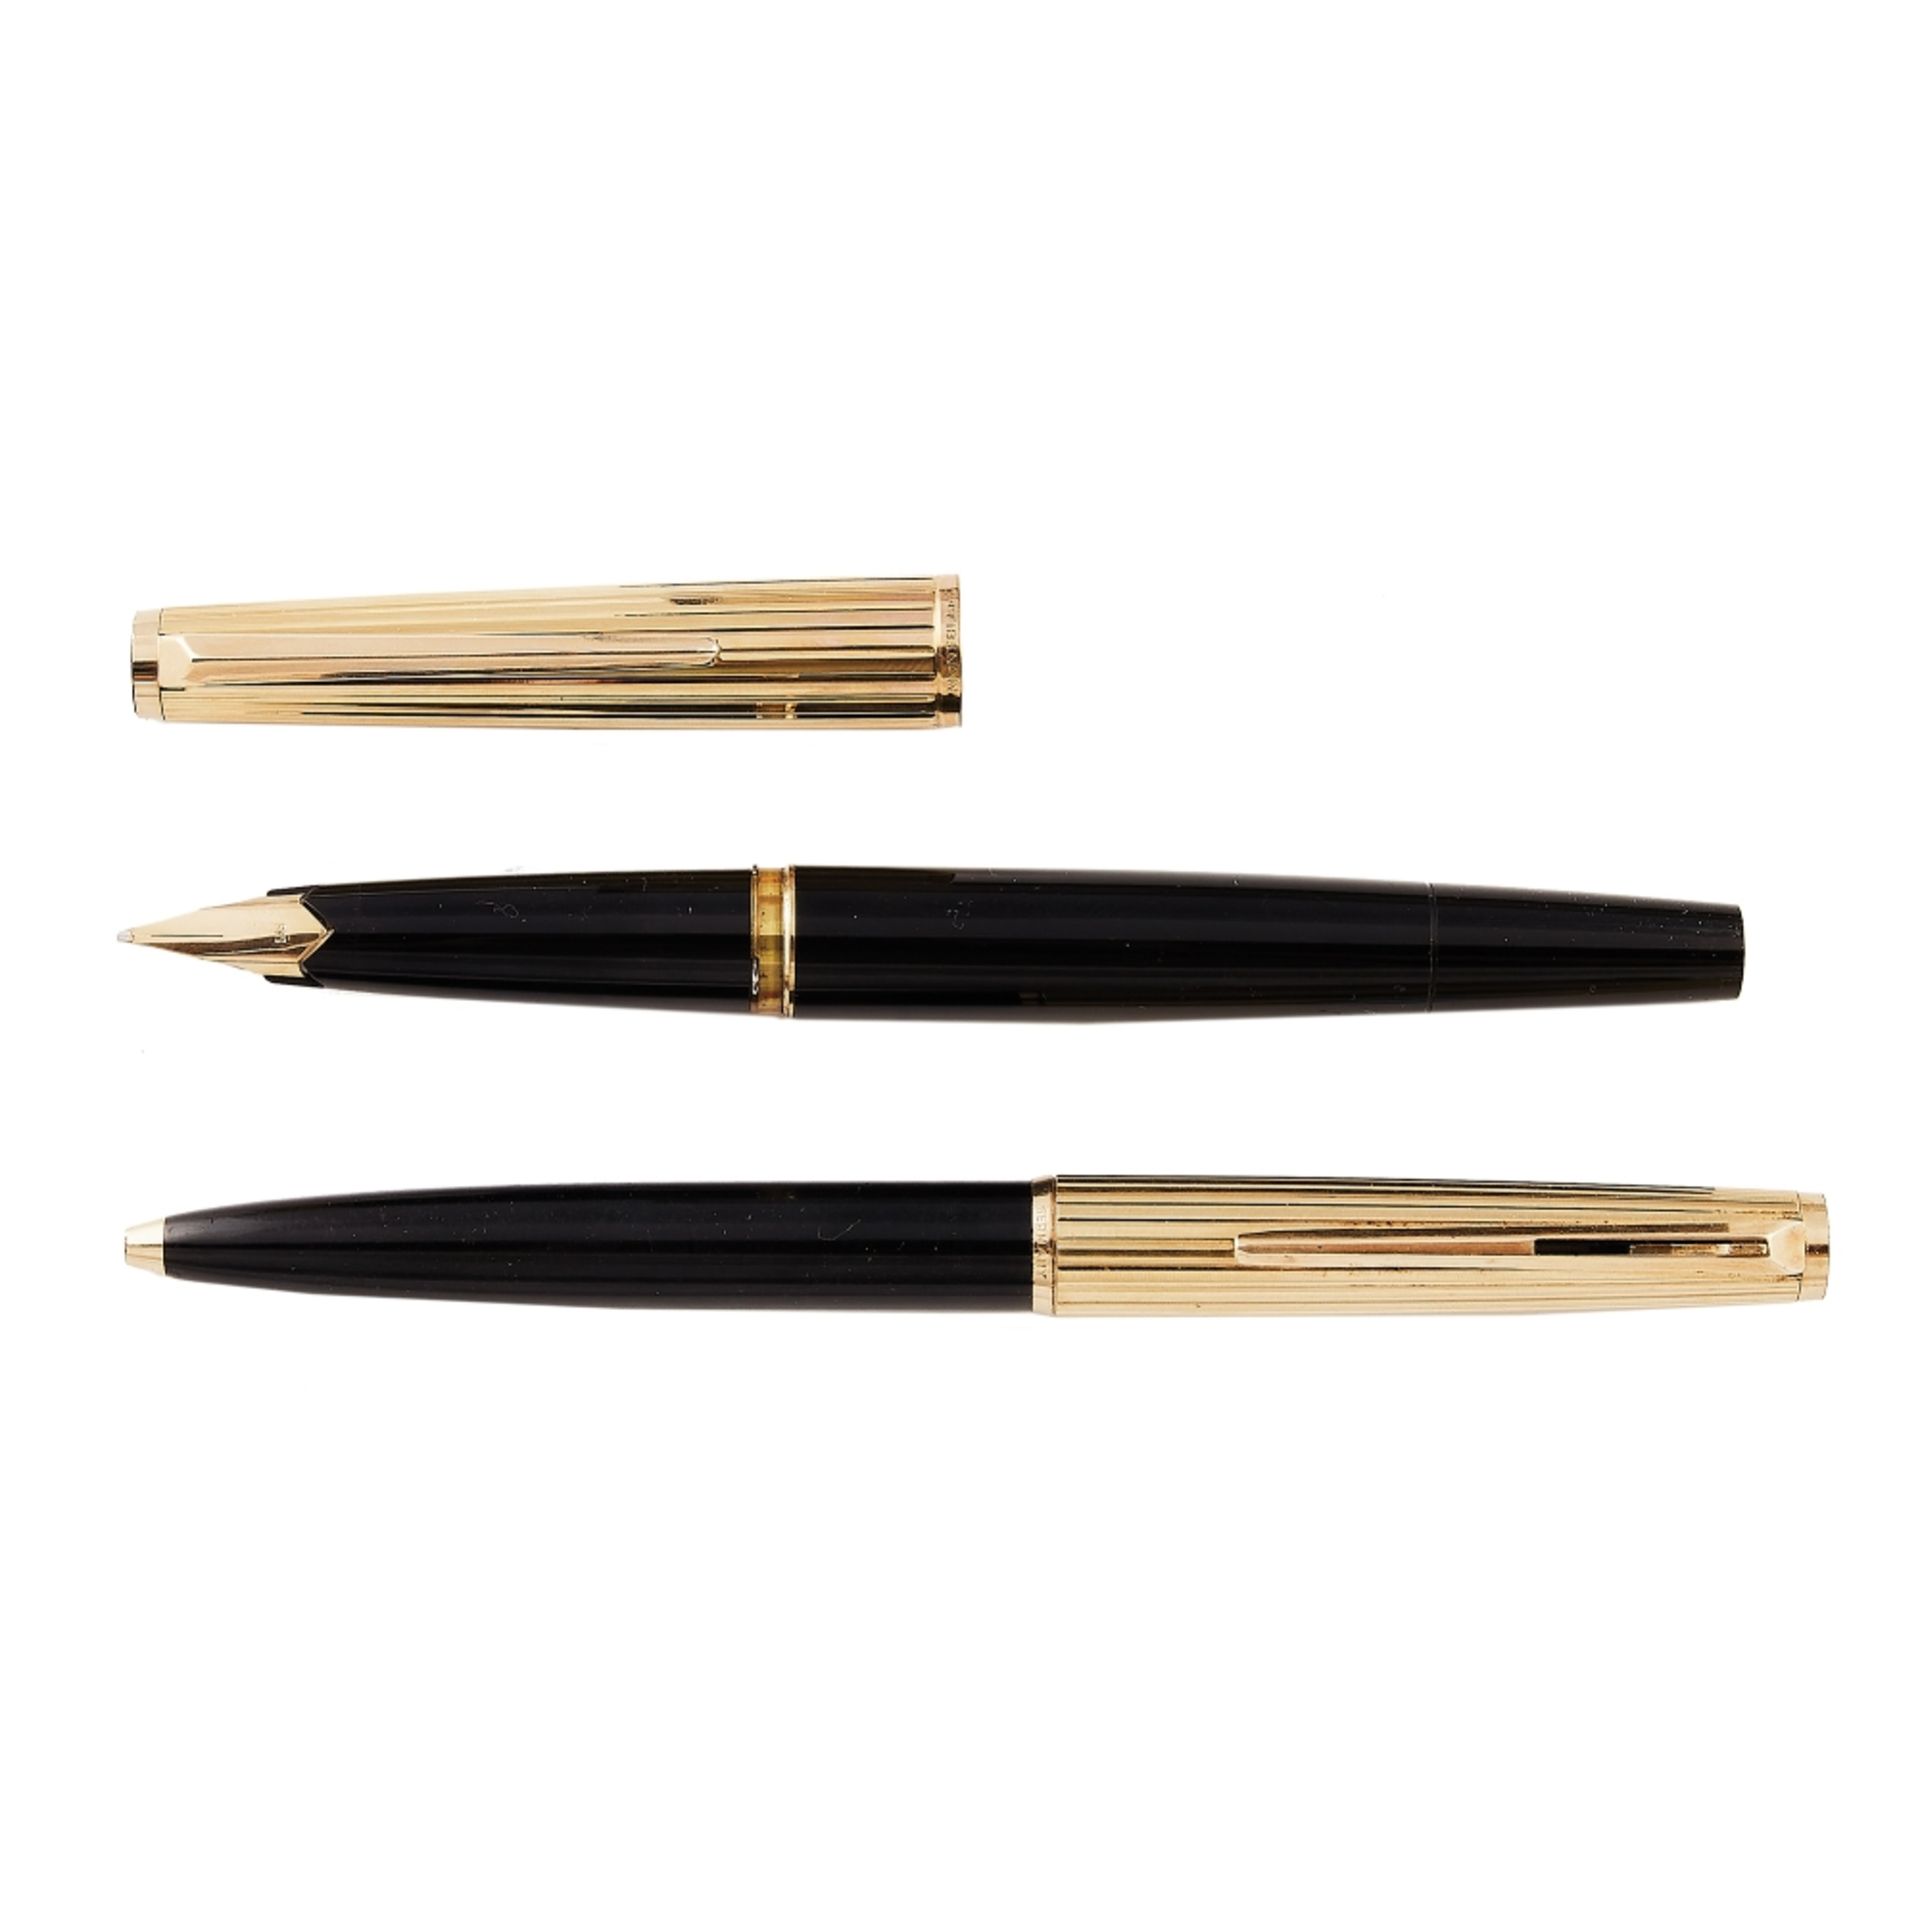 Lote de pluma y bolígrafo Montblanc "227" y "287" en resina negra y plaqué oro, c.1960-1970.